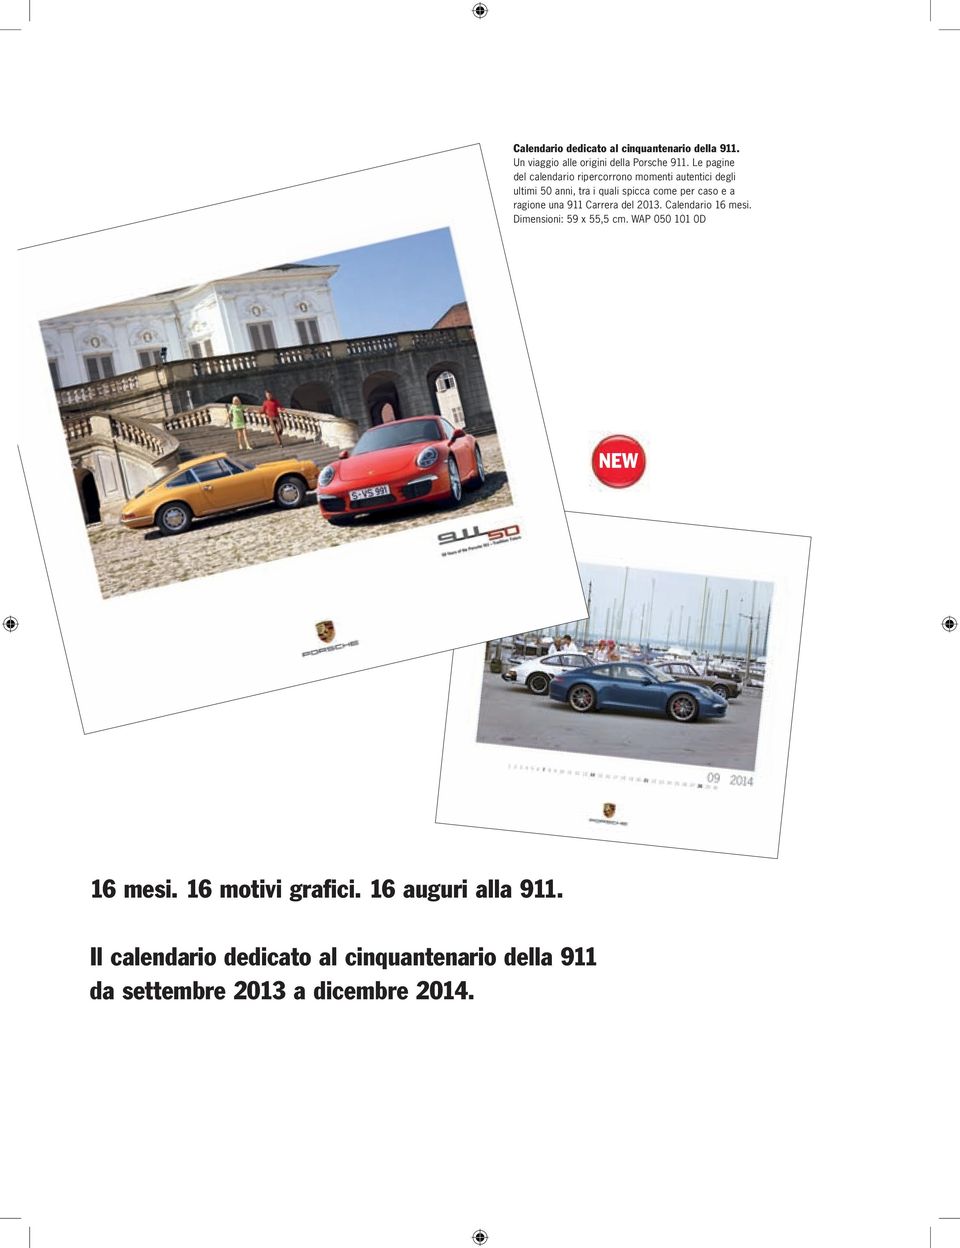 caso e a ragione una 911 Carrera del 2013. Calendario 16 mesi. Dimensioni: 59 x 55,5 cm.